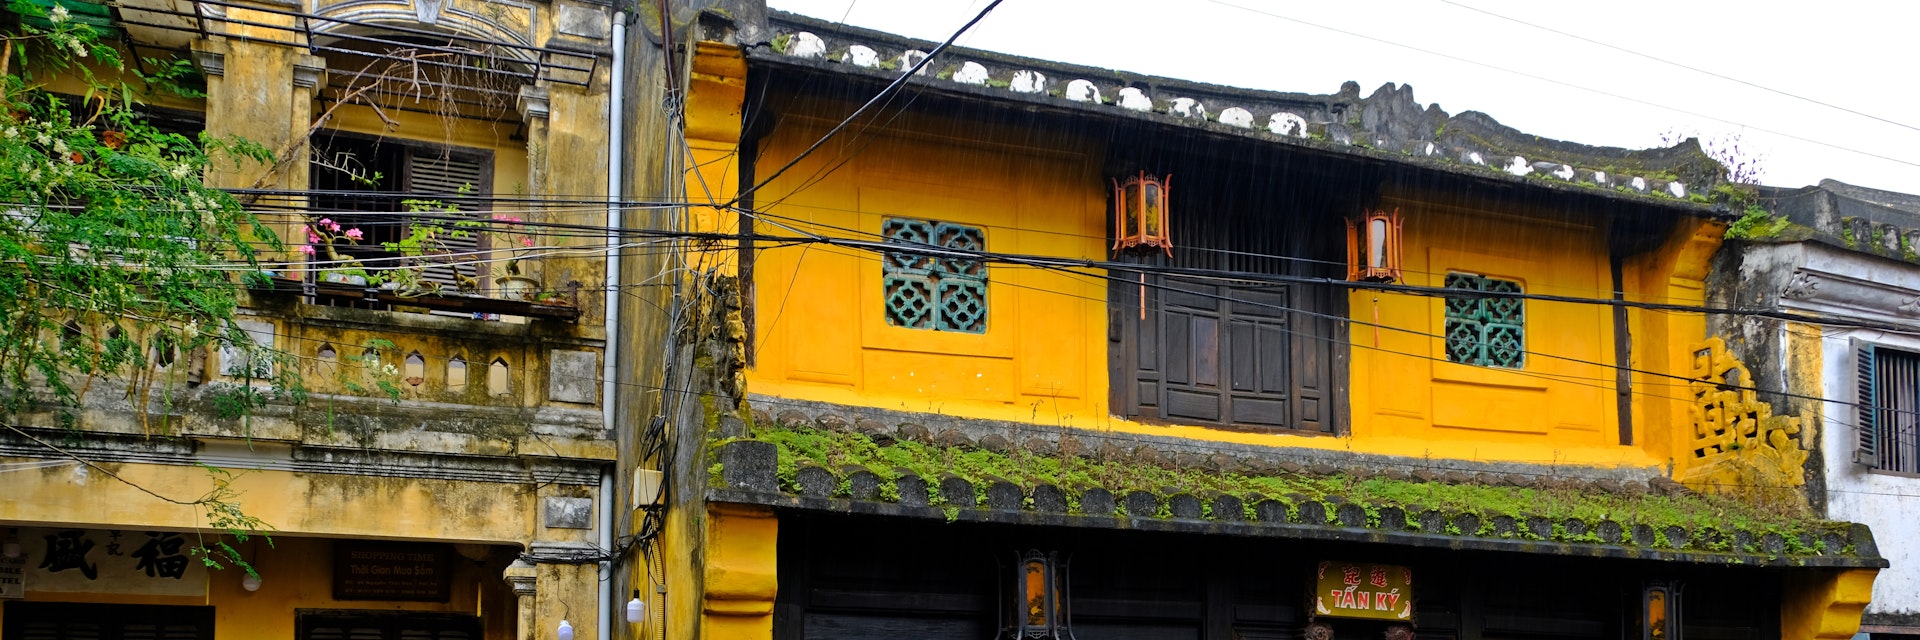 Tan Ky House in Hoi An.